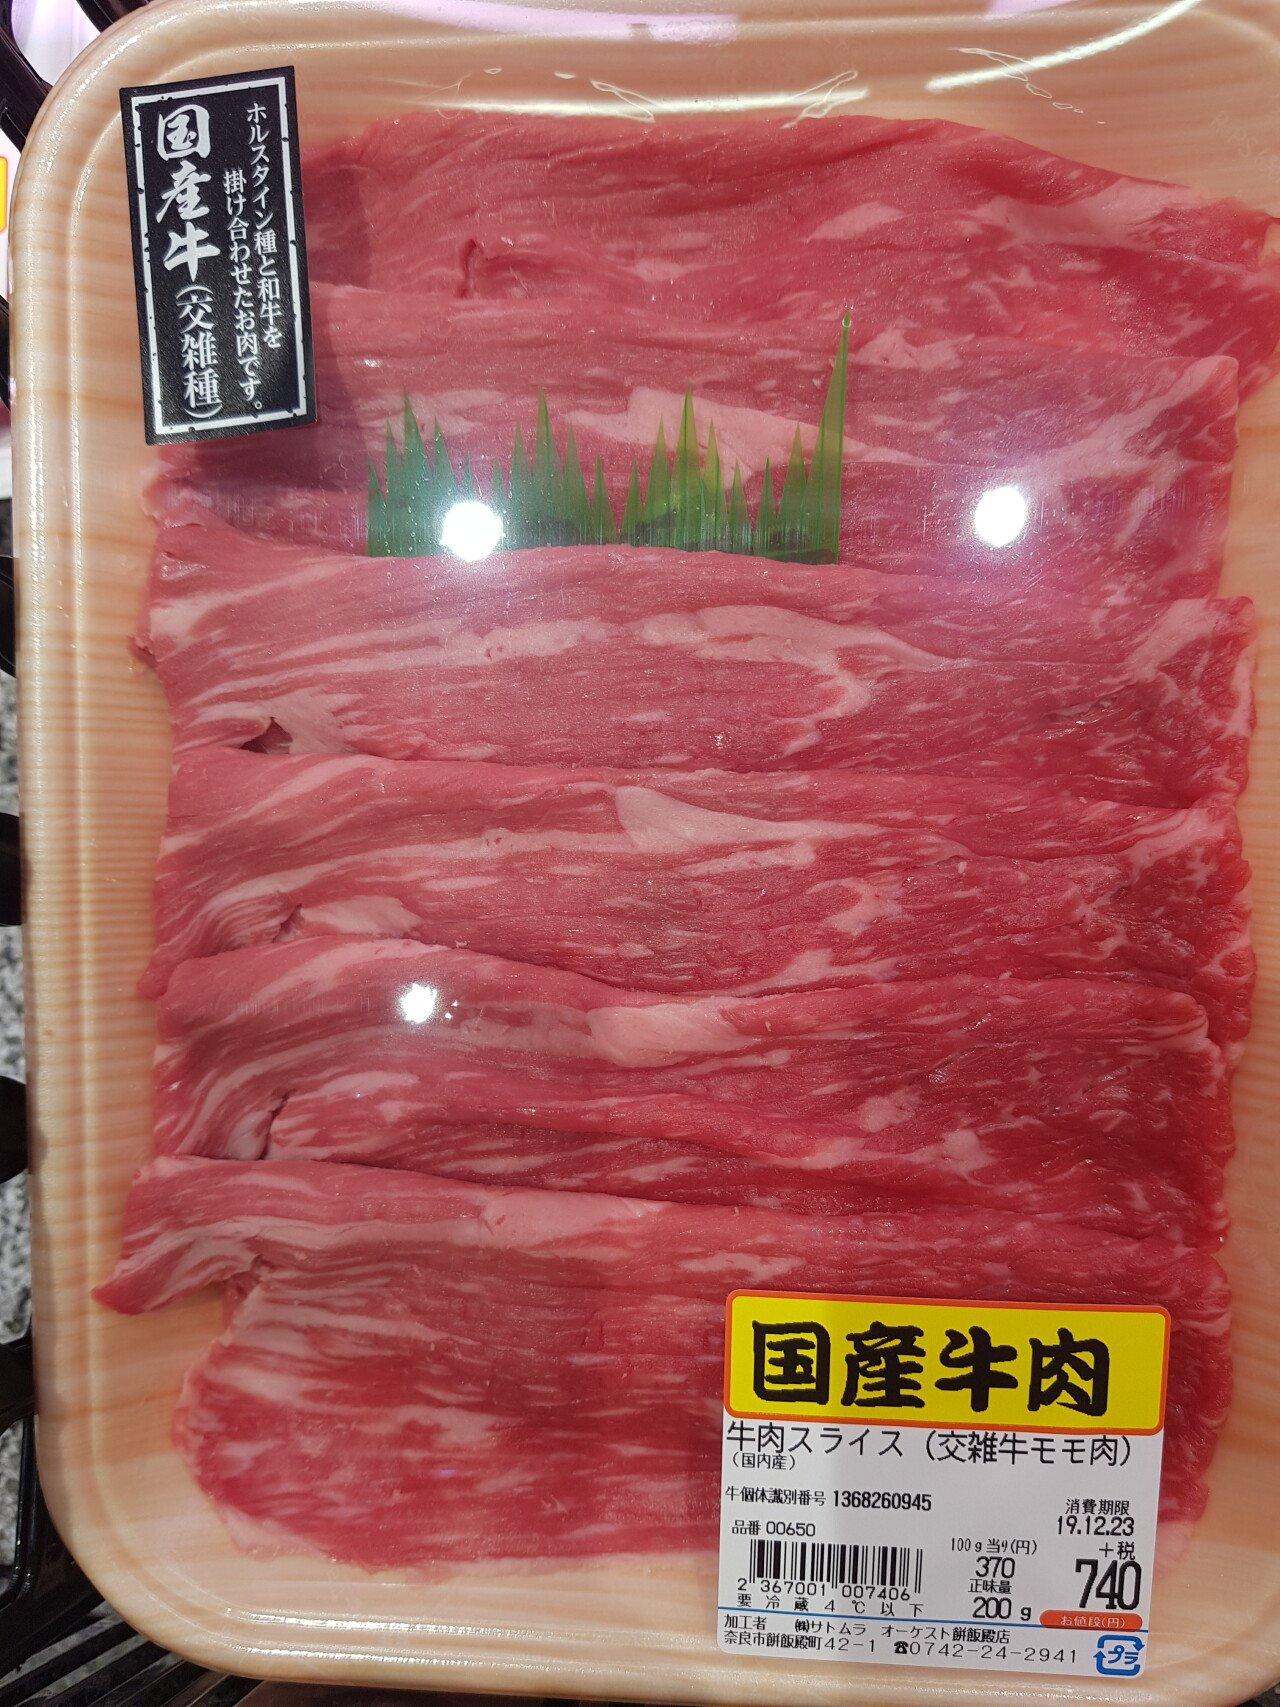 日本国産牛肉の価格jpg